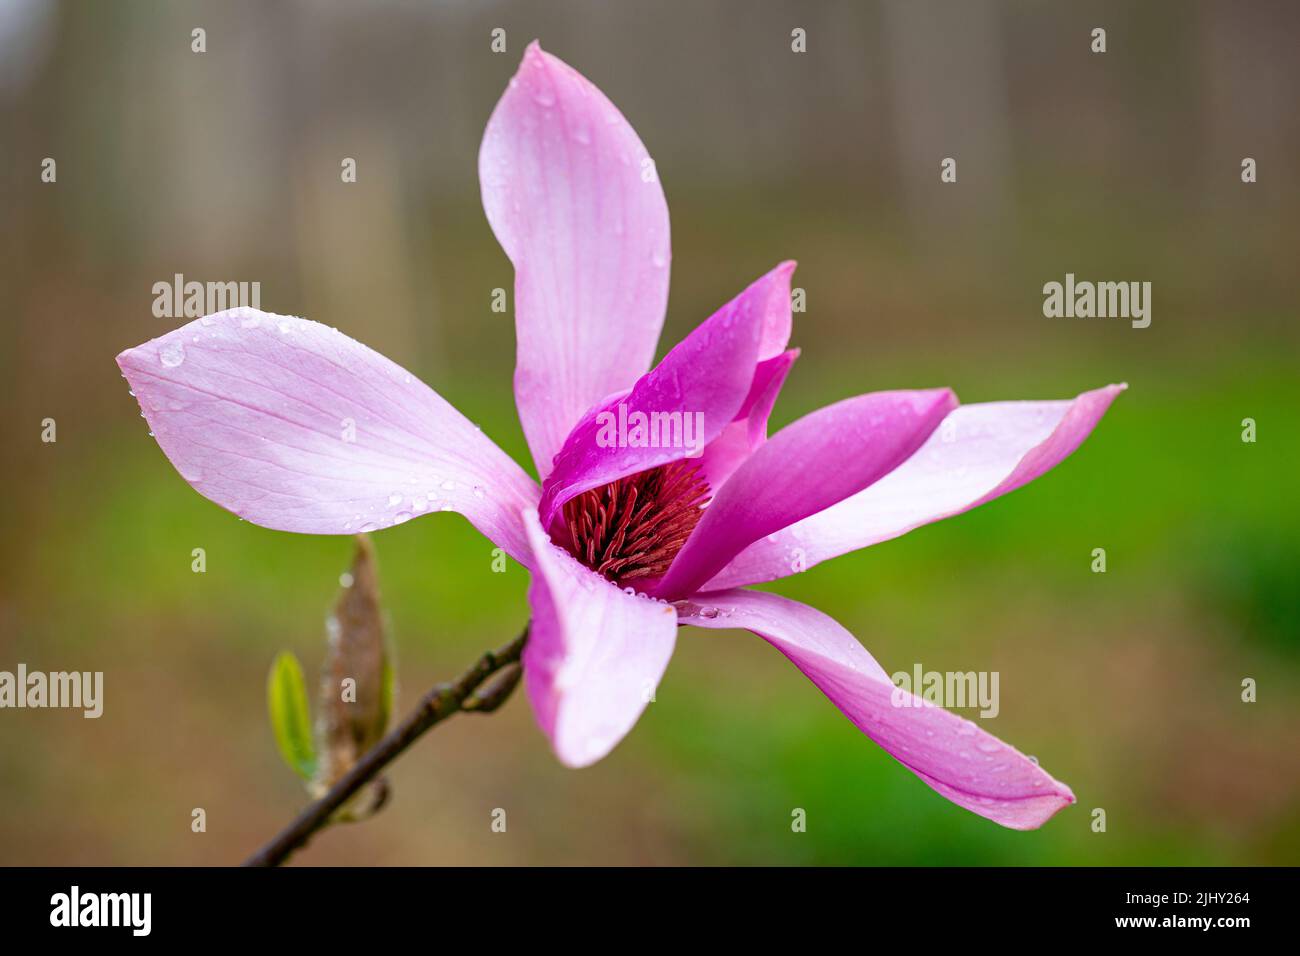 Magnolia 'Caerhays Surprise' Stock Photo